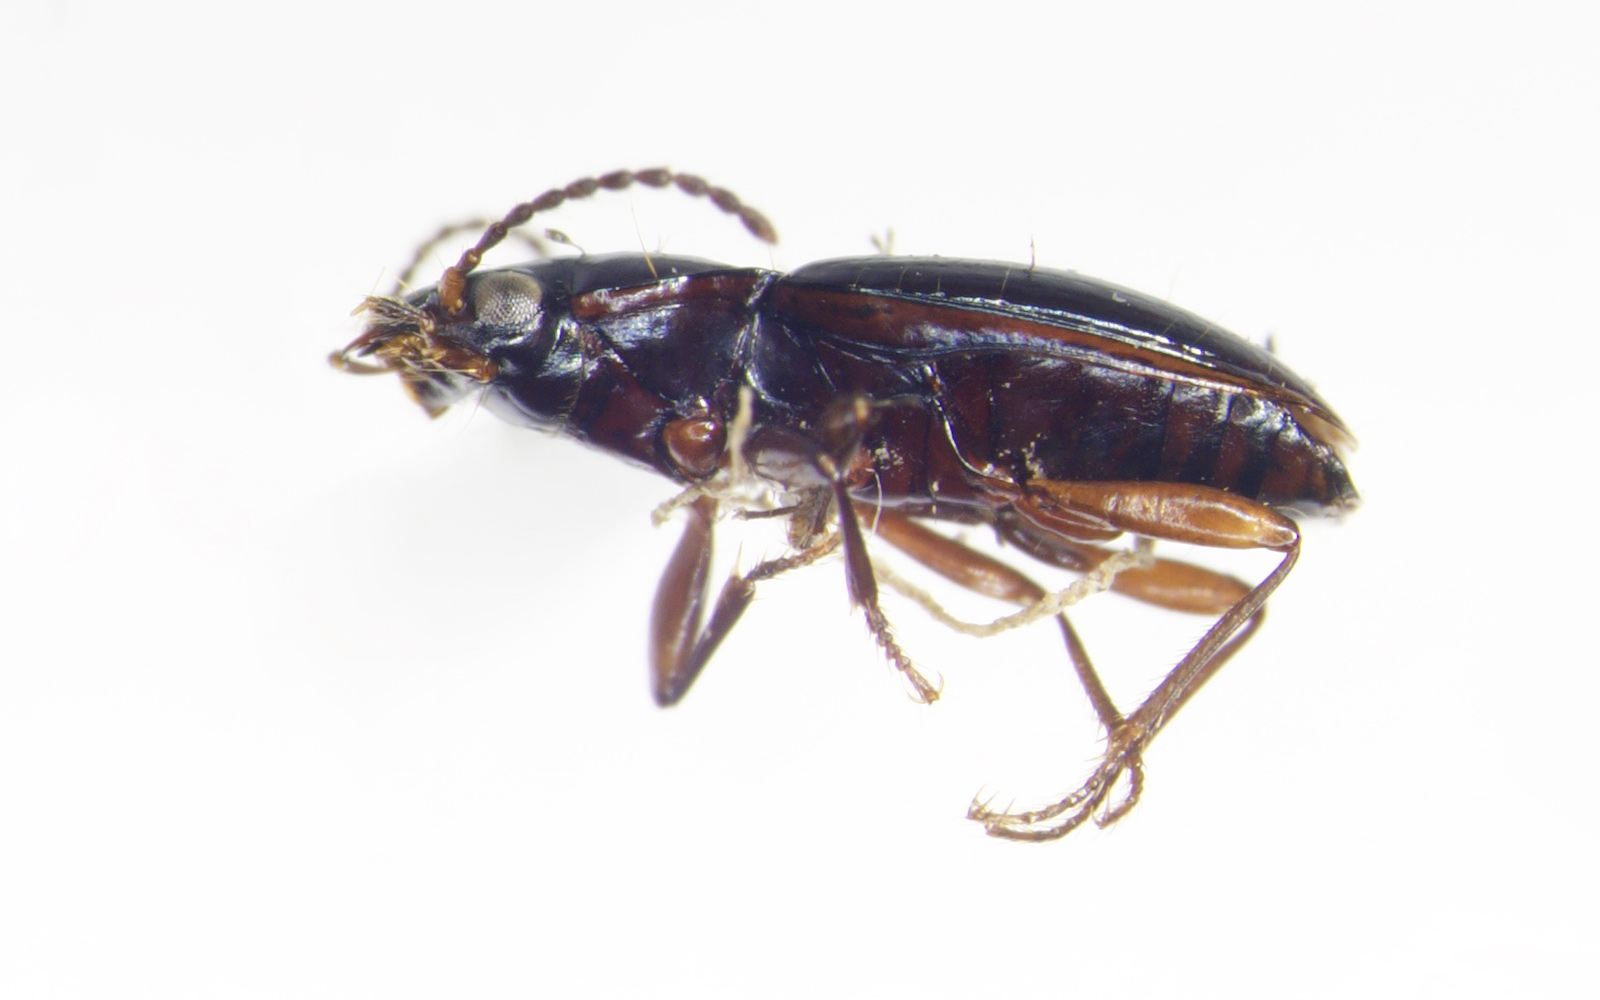 Bembidium vulcanium (Carabidae)